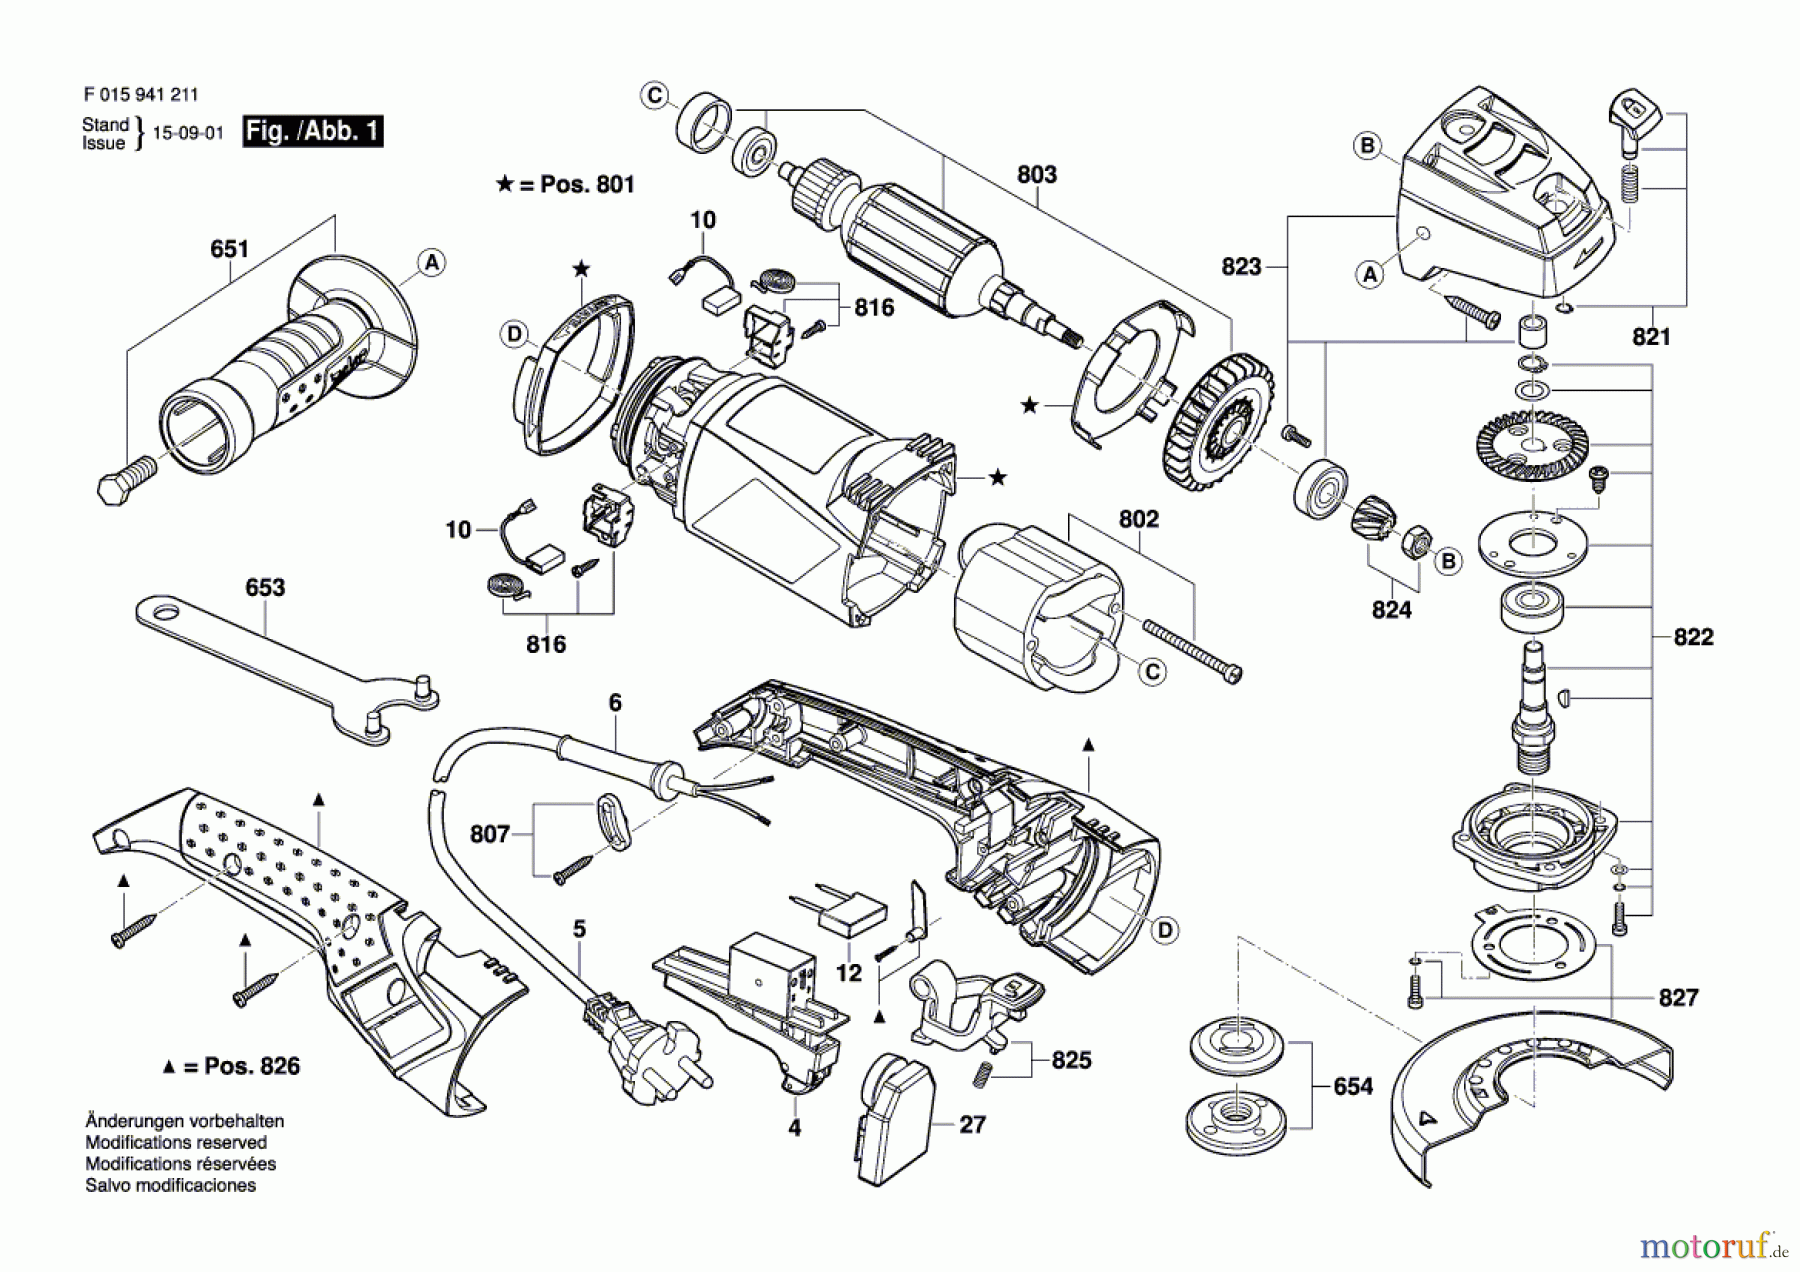  Bosch Werkzeug Pw-Winkelschleifer 9412 Seite 1